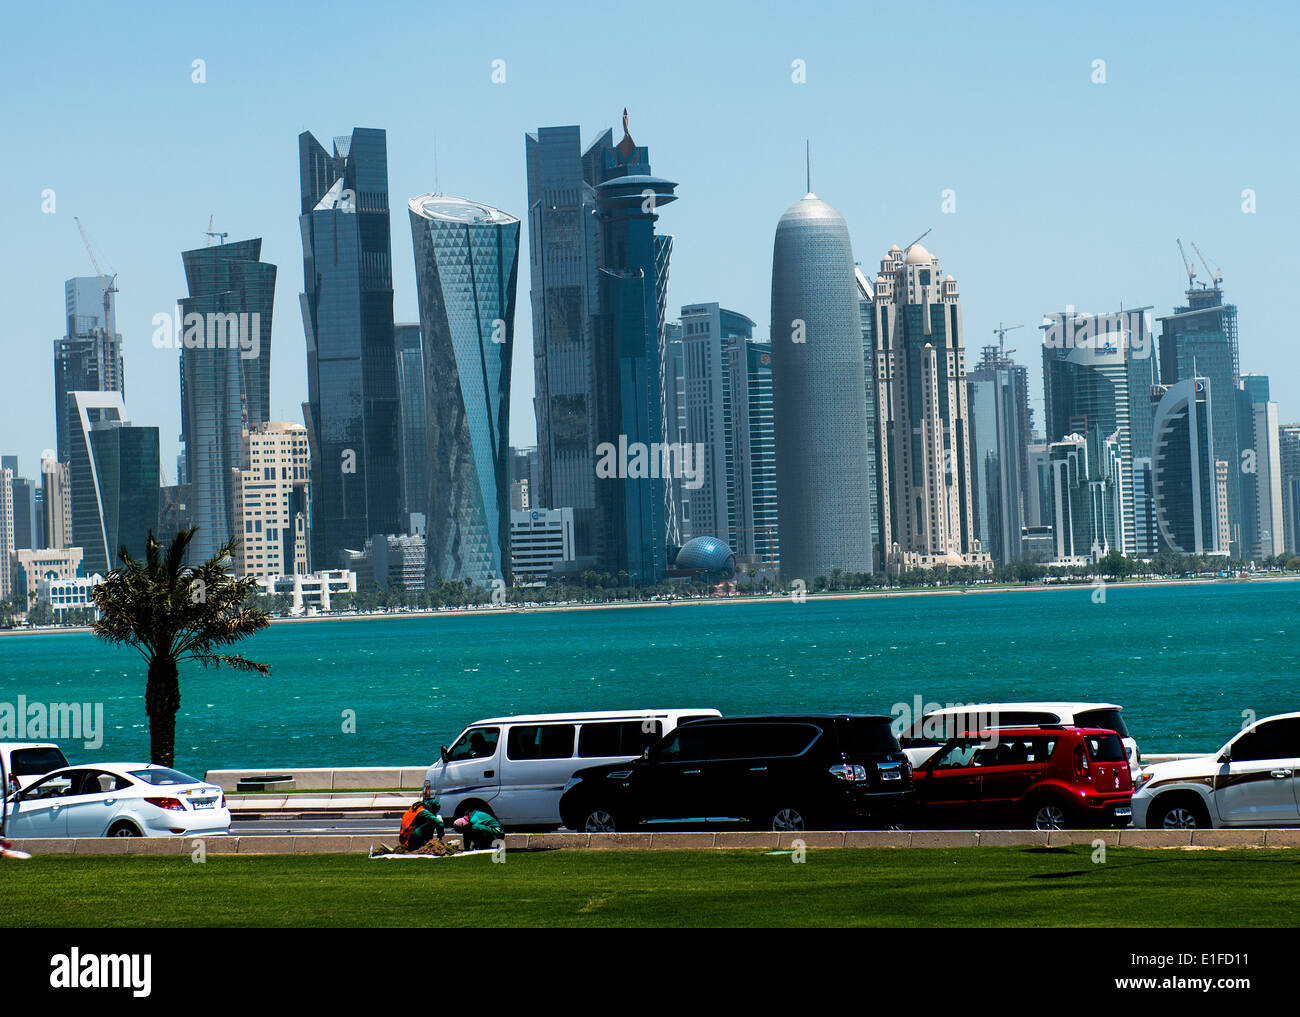 El ultra moderno horizonte de Doha del centro financiero. Foto de stock